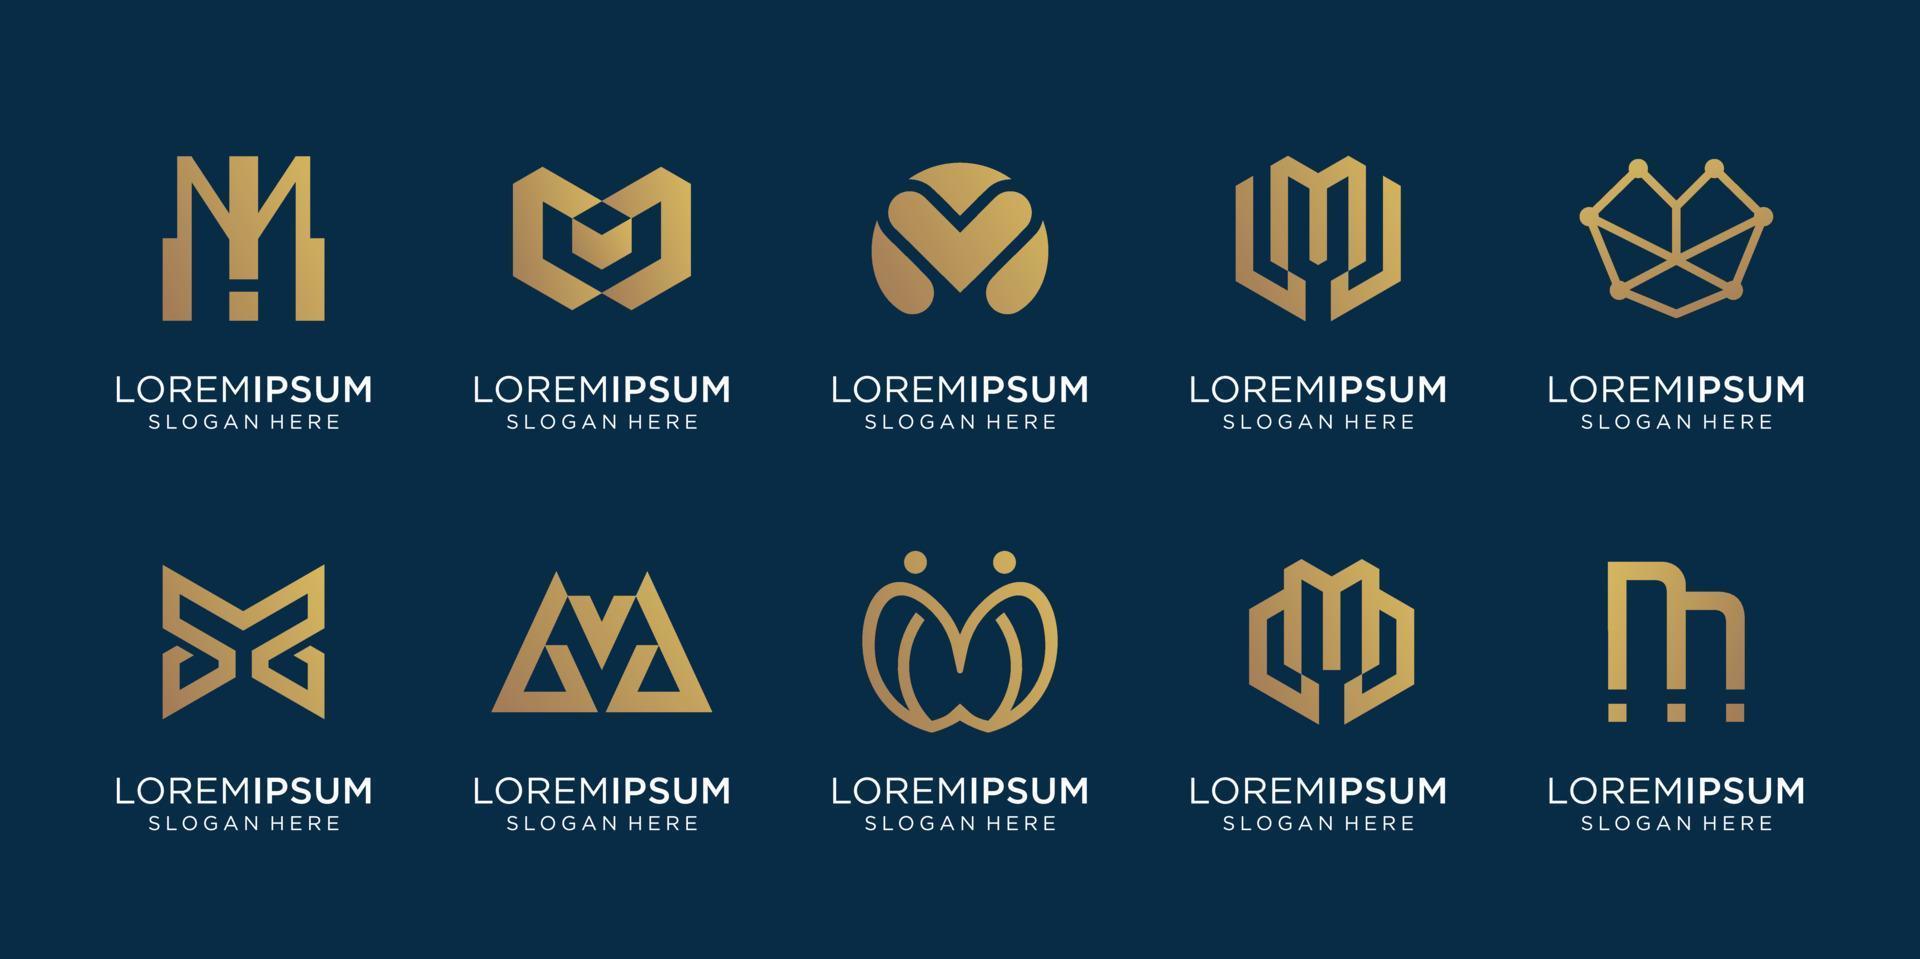 satz kreativer anfangsbuchstabe m logo-vorlage. ikonen für das geschäft von luxus, gold, linie, elegant, einfach. Premium-Vektor vektor